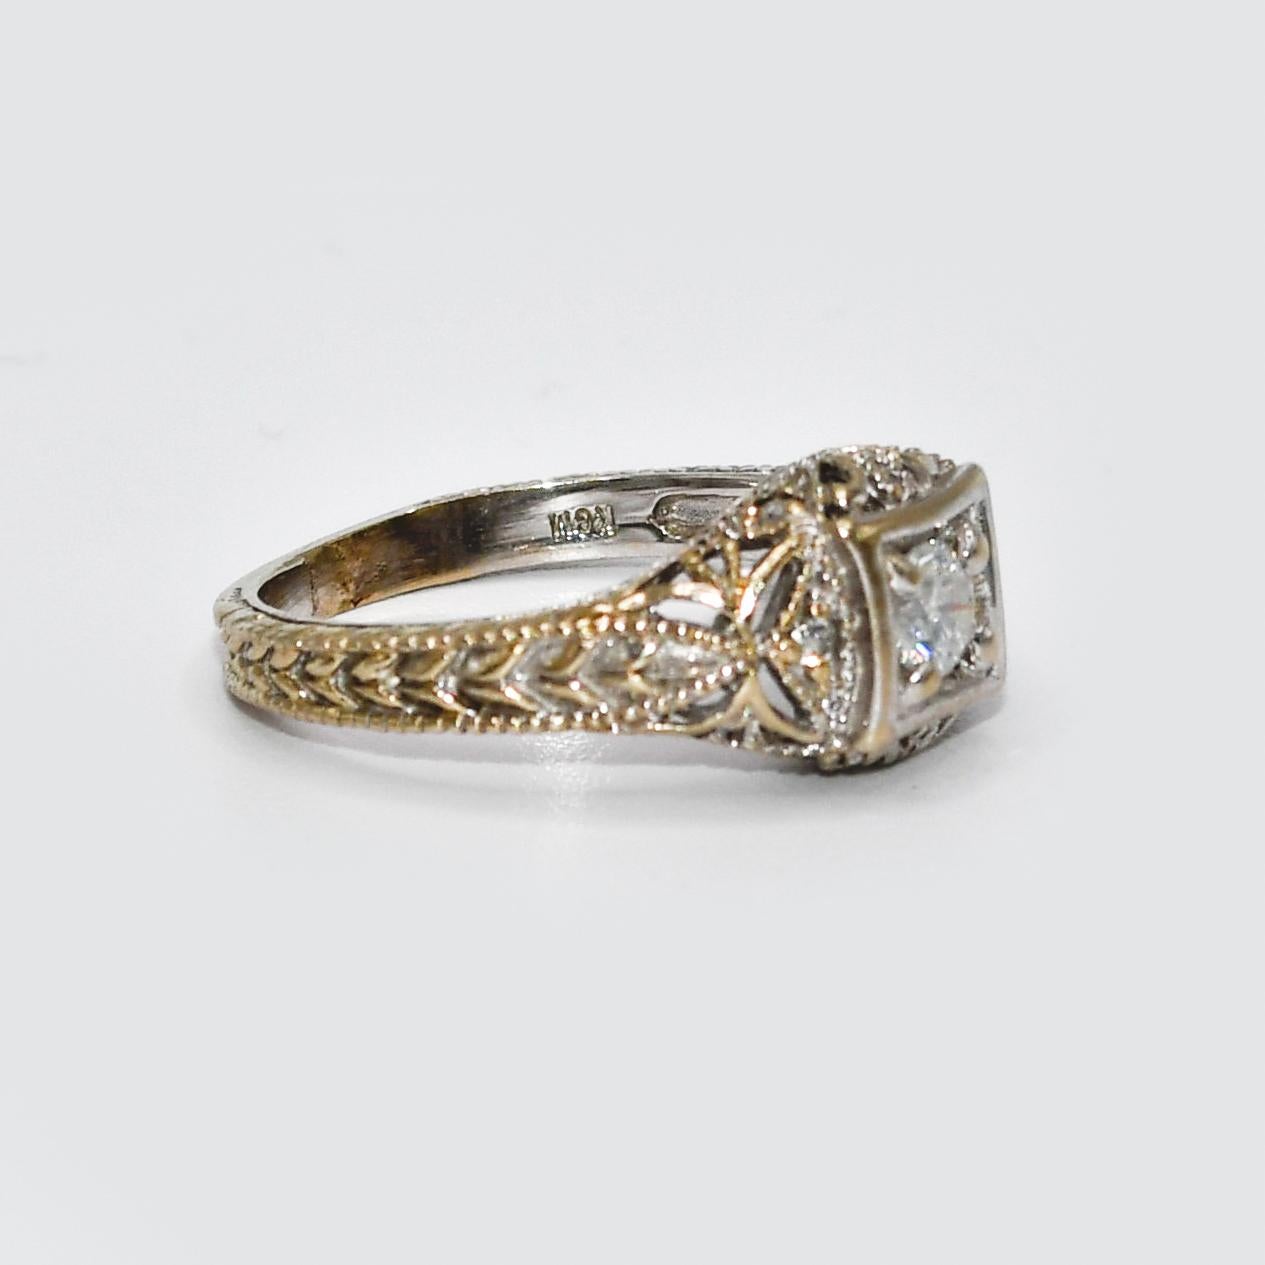 14 Karat Weißgold Diamantring, .25 Karat, 4.2 Karat
14k Weißgold Diamant Ring mit detaillierten durchbrochenen Design auf der Galerie, und der Schaft des Rings.
Der zentrale Diamant ist ein runder Brillantschliff, 0,25ct.
Reinheit SI1-SI2, Farbe